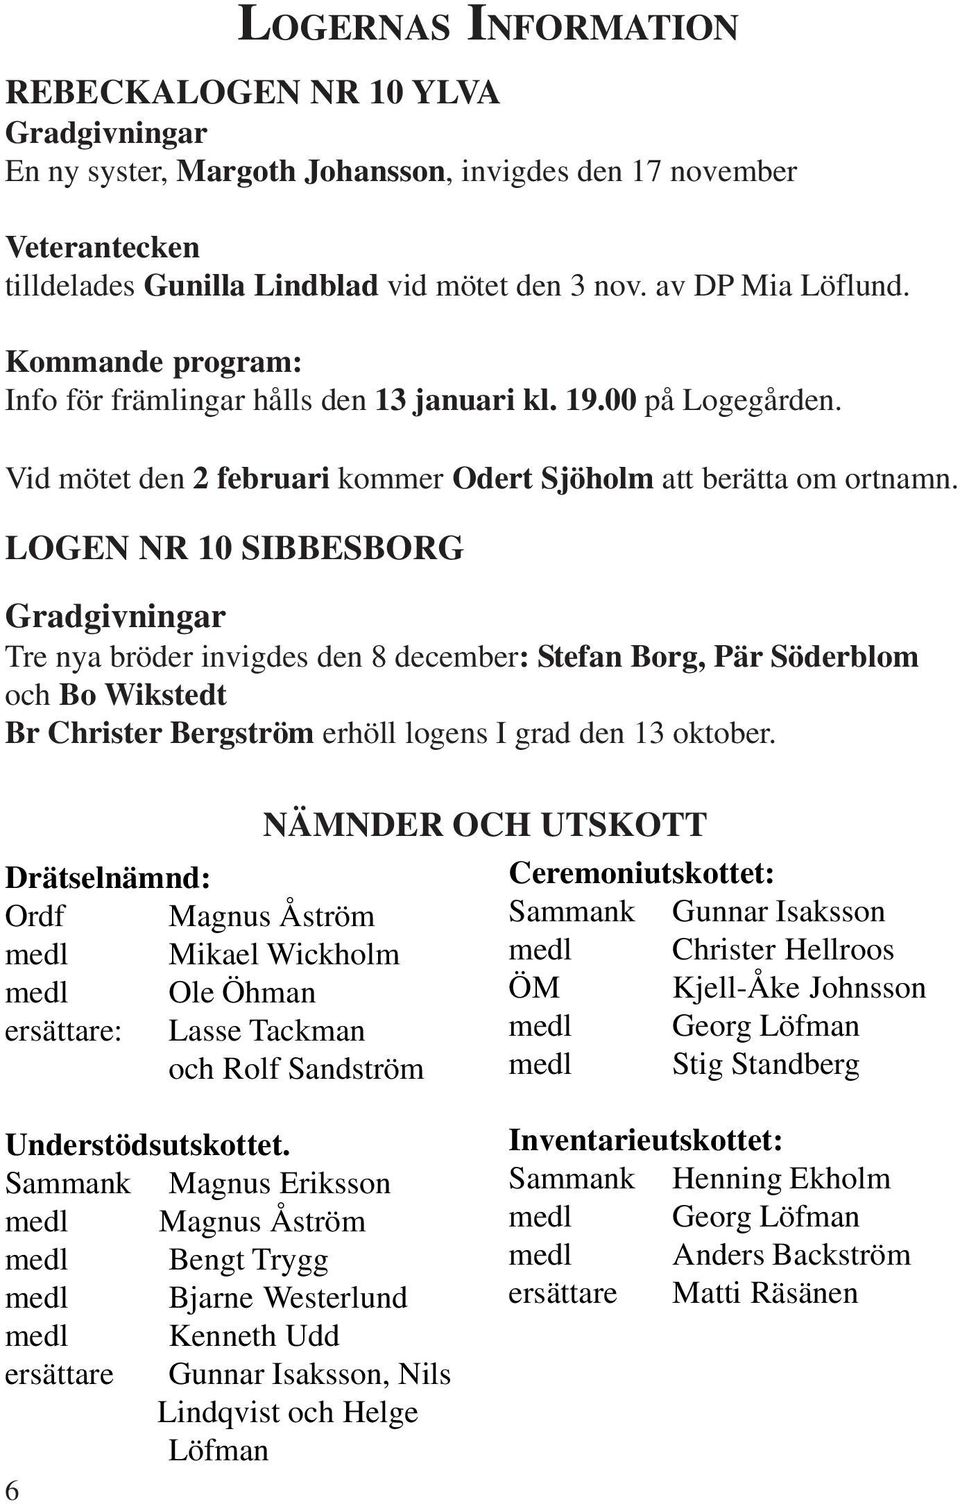 LOGEN NR 10 SIBBESBORG Gradgivningar Tre nya bröder invigdes den 8 december: Stefan Borg, Pär Söderblom och Bo Wikstedt Br Christer Bergström erhöll logens I grad den 13 oktober.